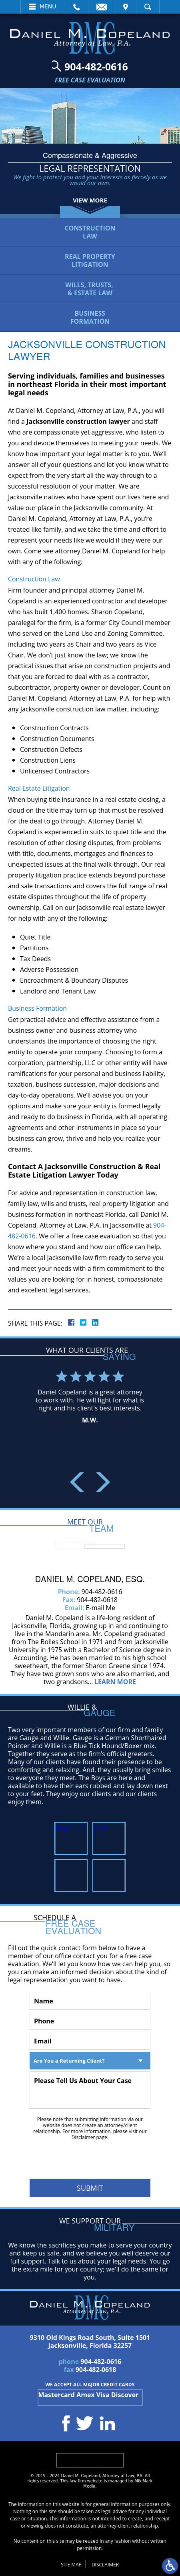 Law Office of Daniel M. Copeland - Jacksonville FL Lawyers